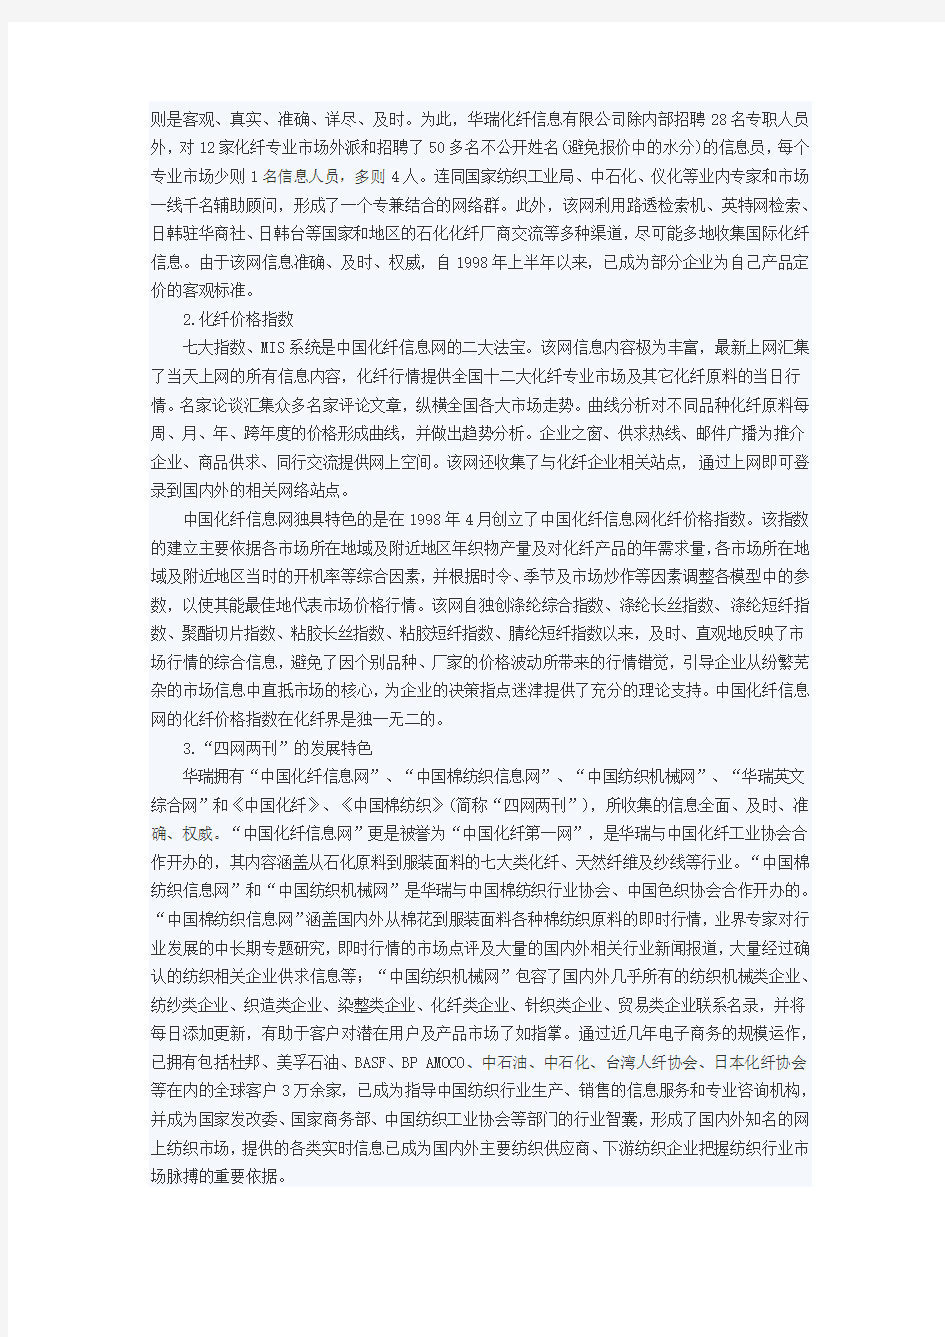 中国化纤信息网商业模式案例调研